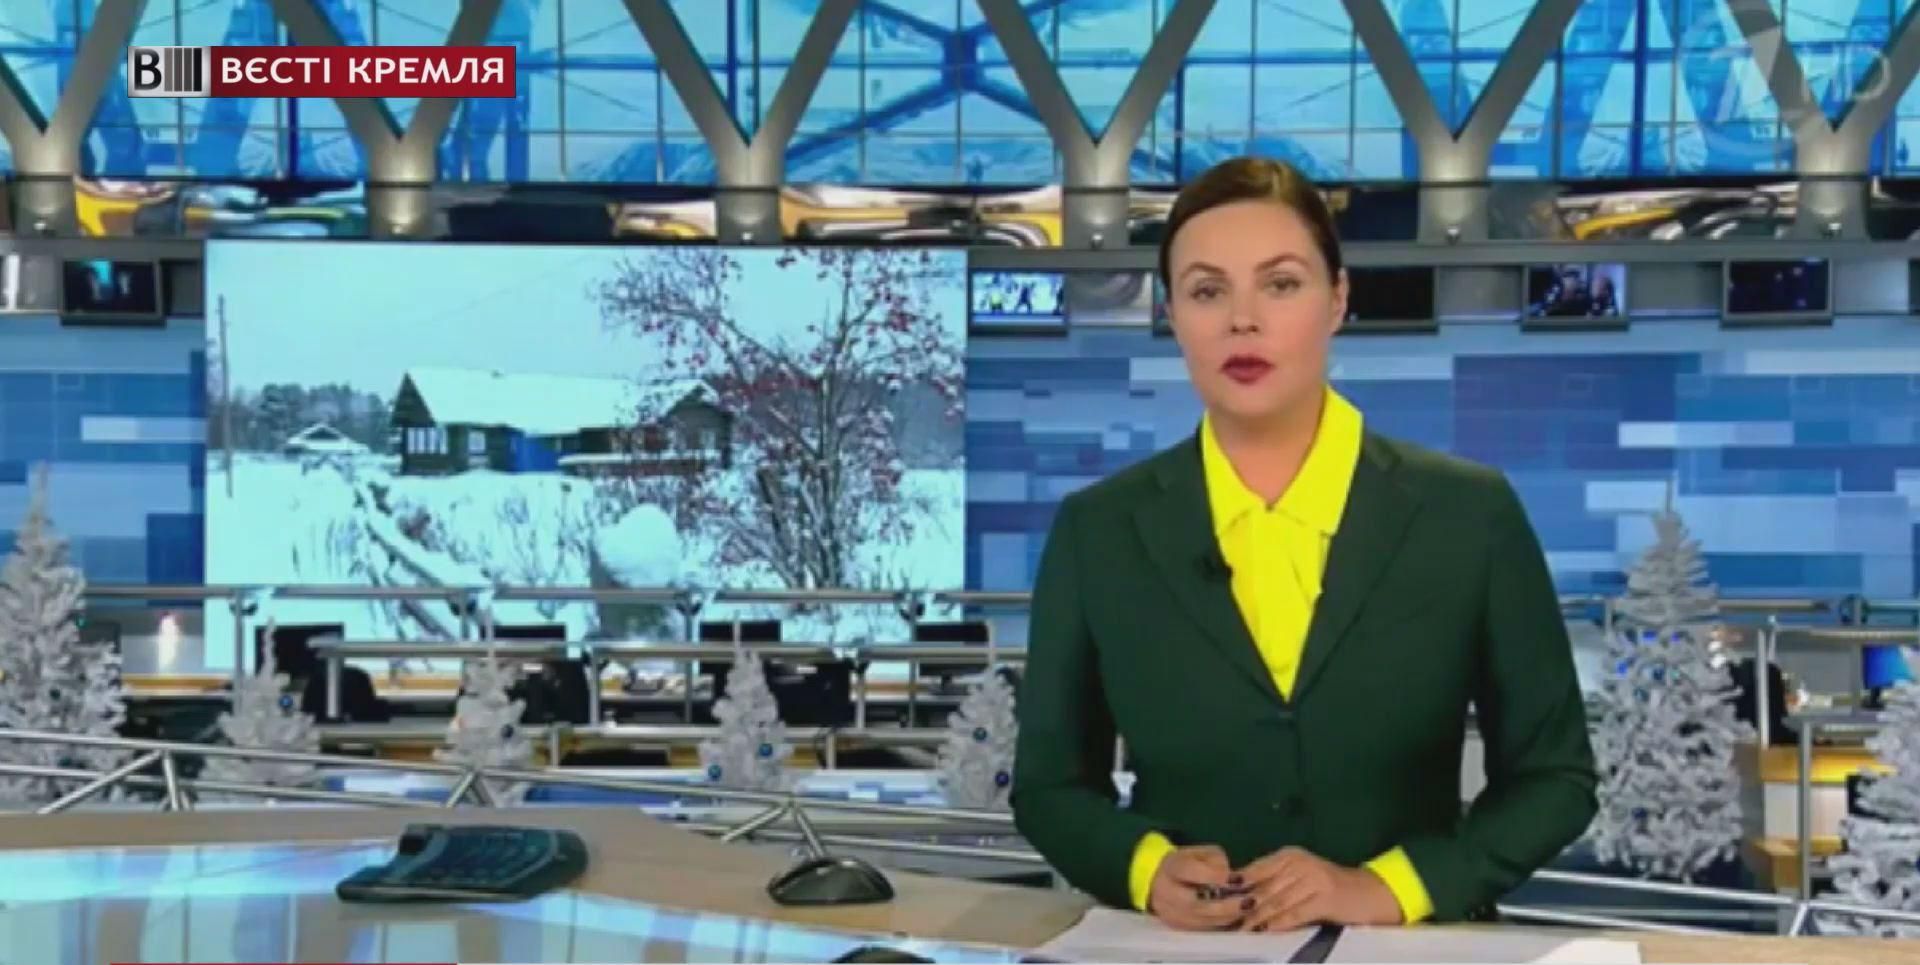 Российский "Первый канал" празднует юбилей в День лжи